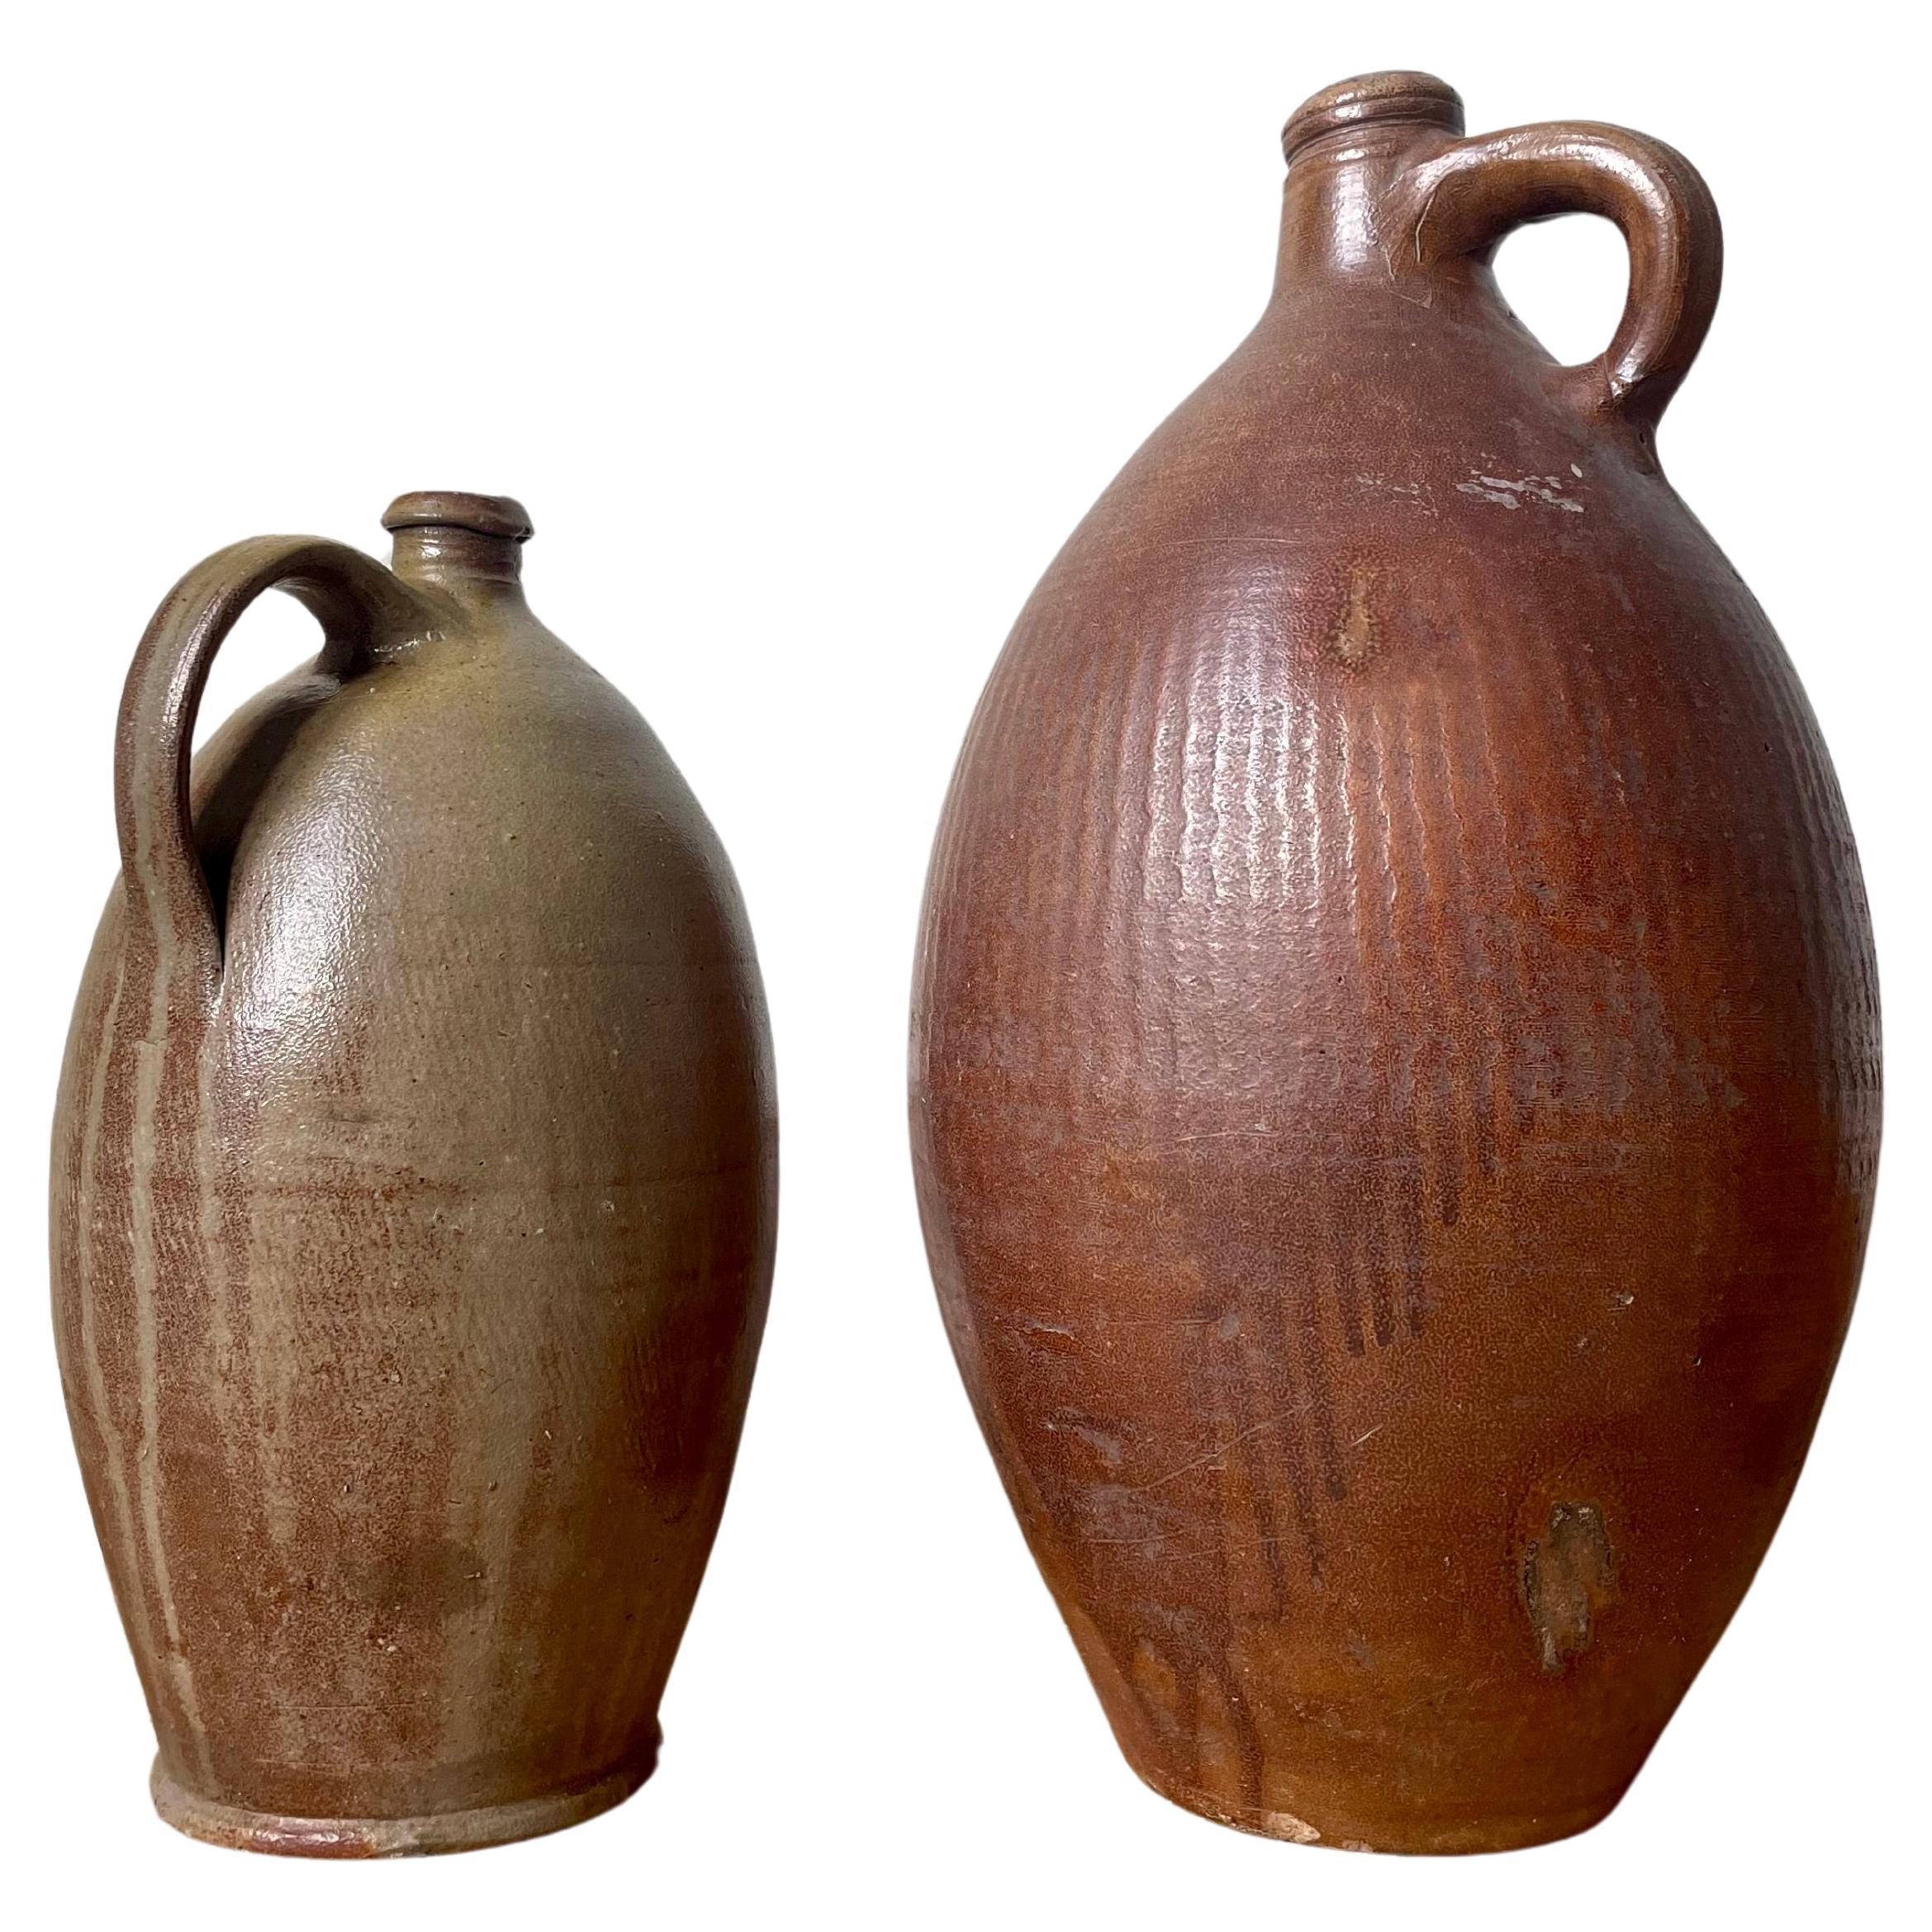 Deux grandes cruches à bouteille en terre cuite française du XIXe siècle